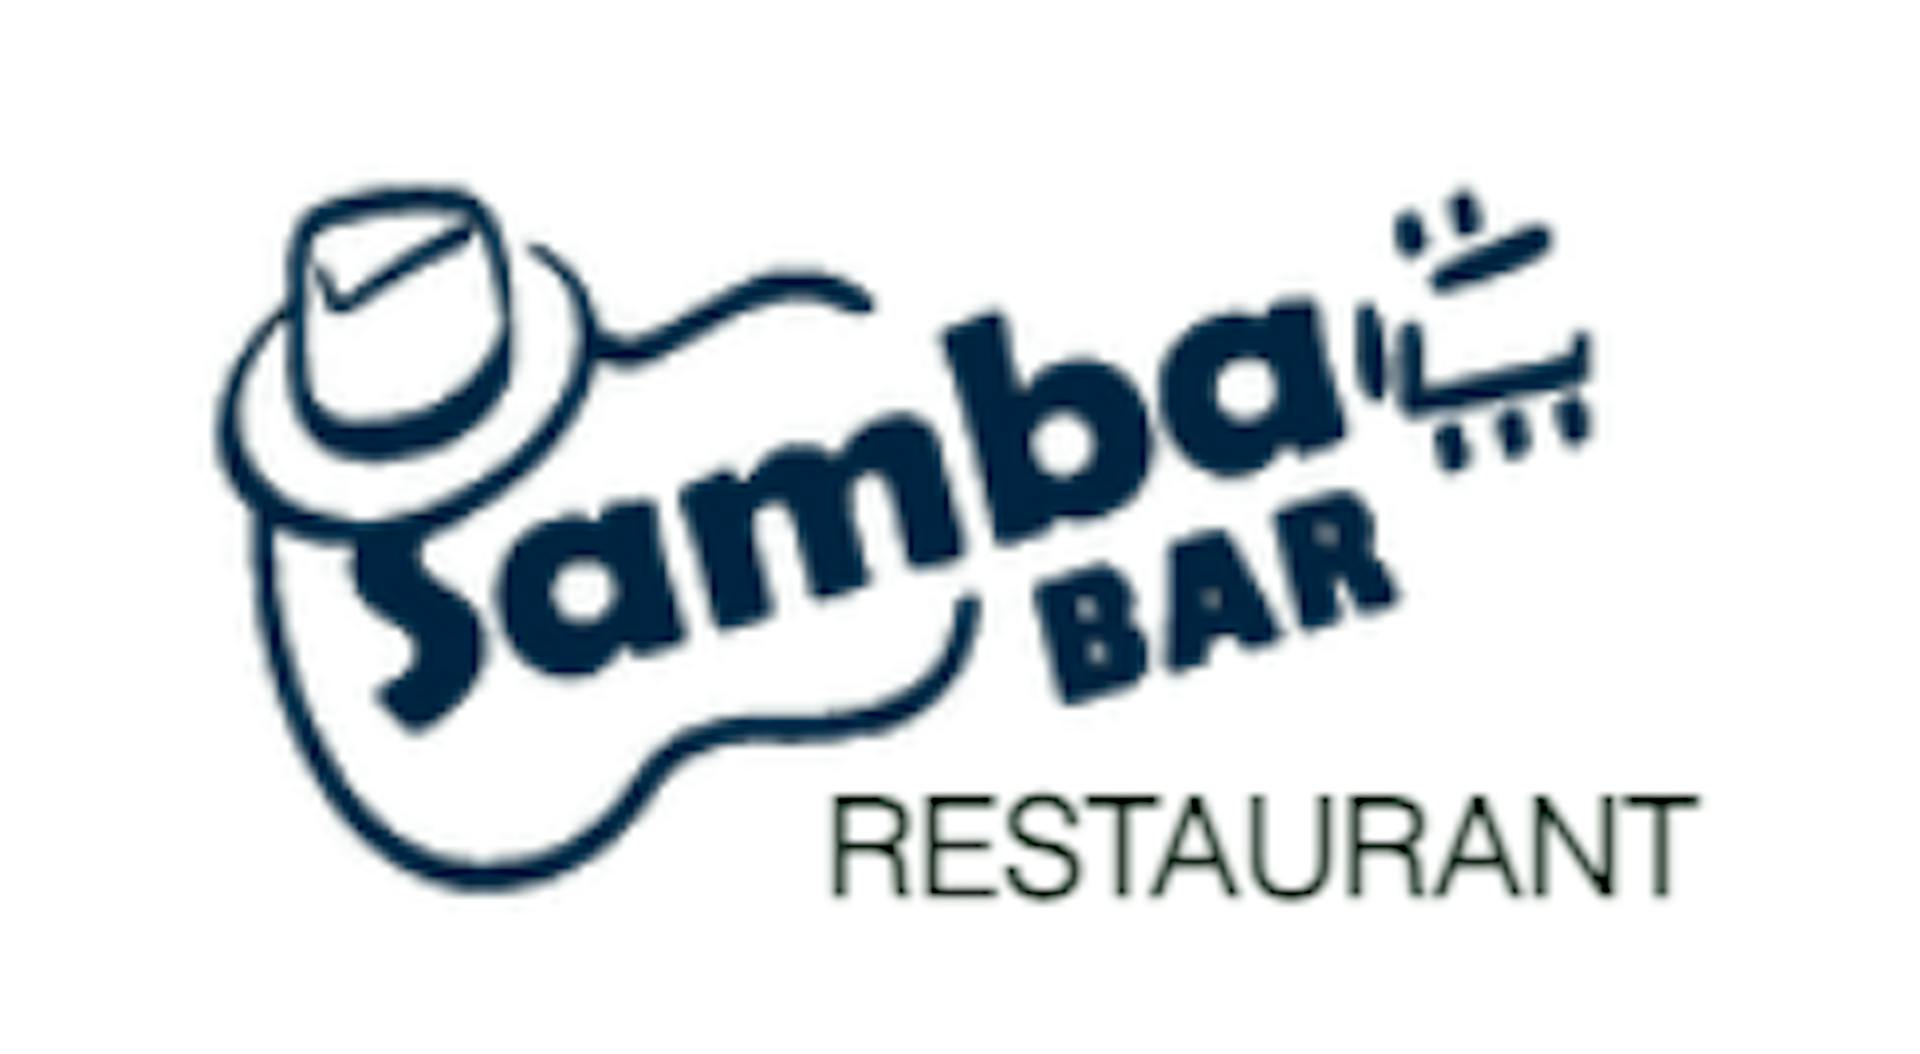 Samba Bar & Grille